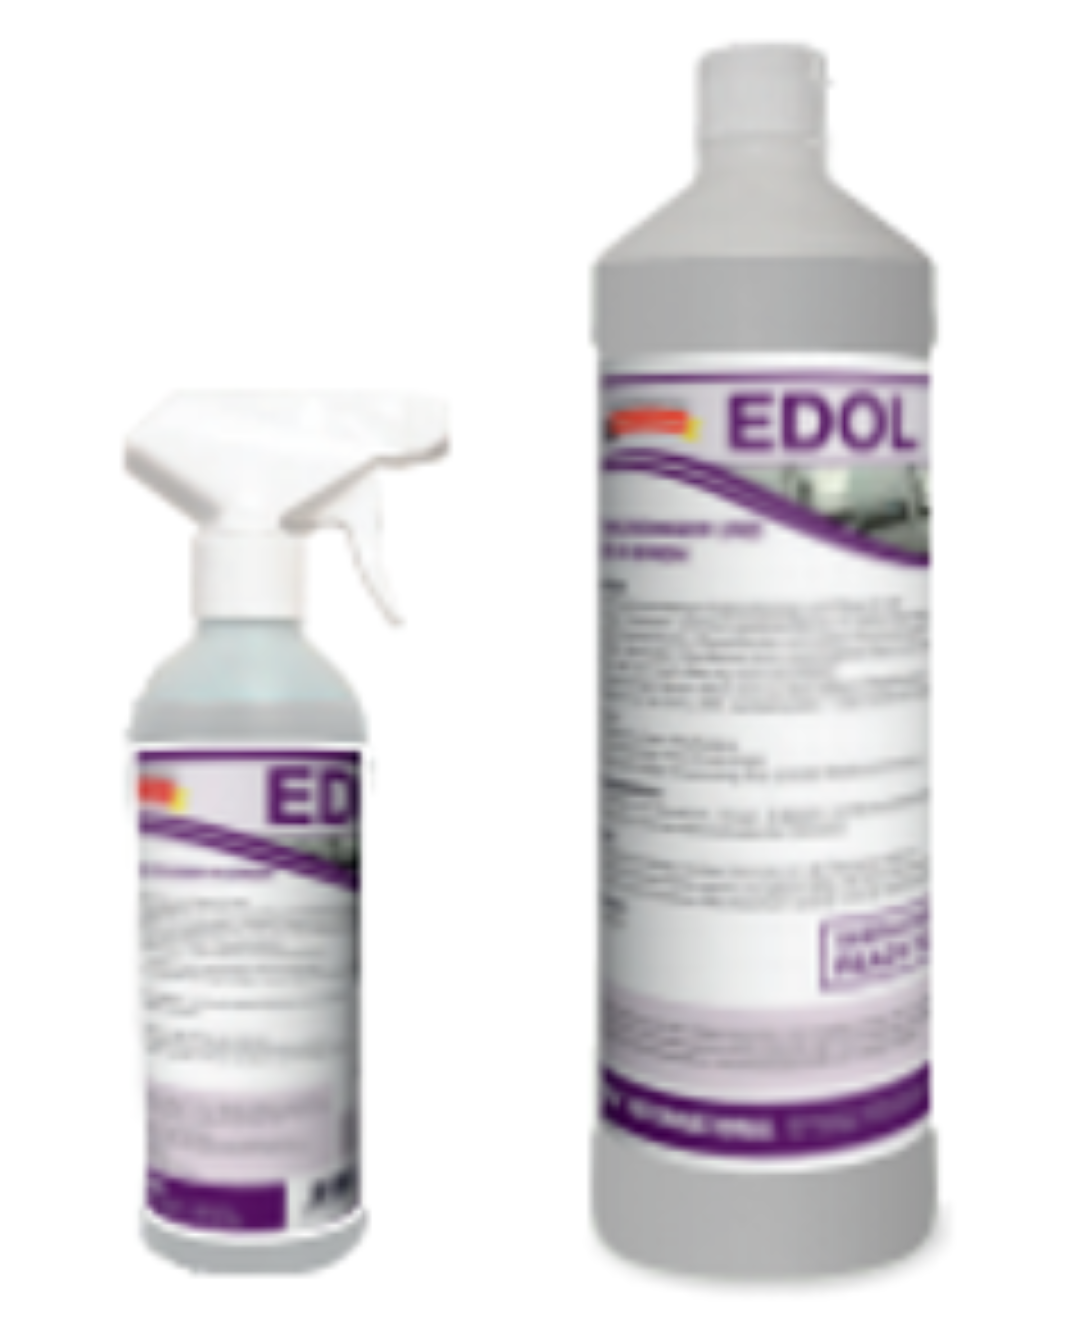 Edol 2in1 | Edelstahlreiniger & Pflege | 500ml Flasche